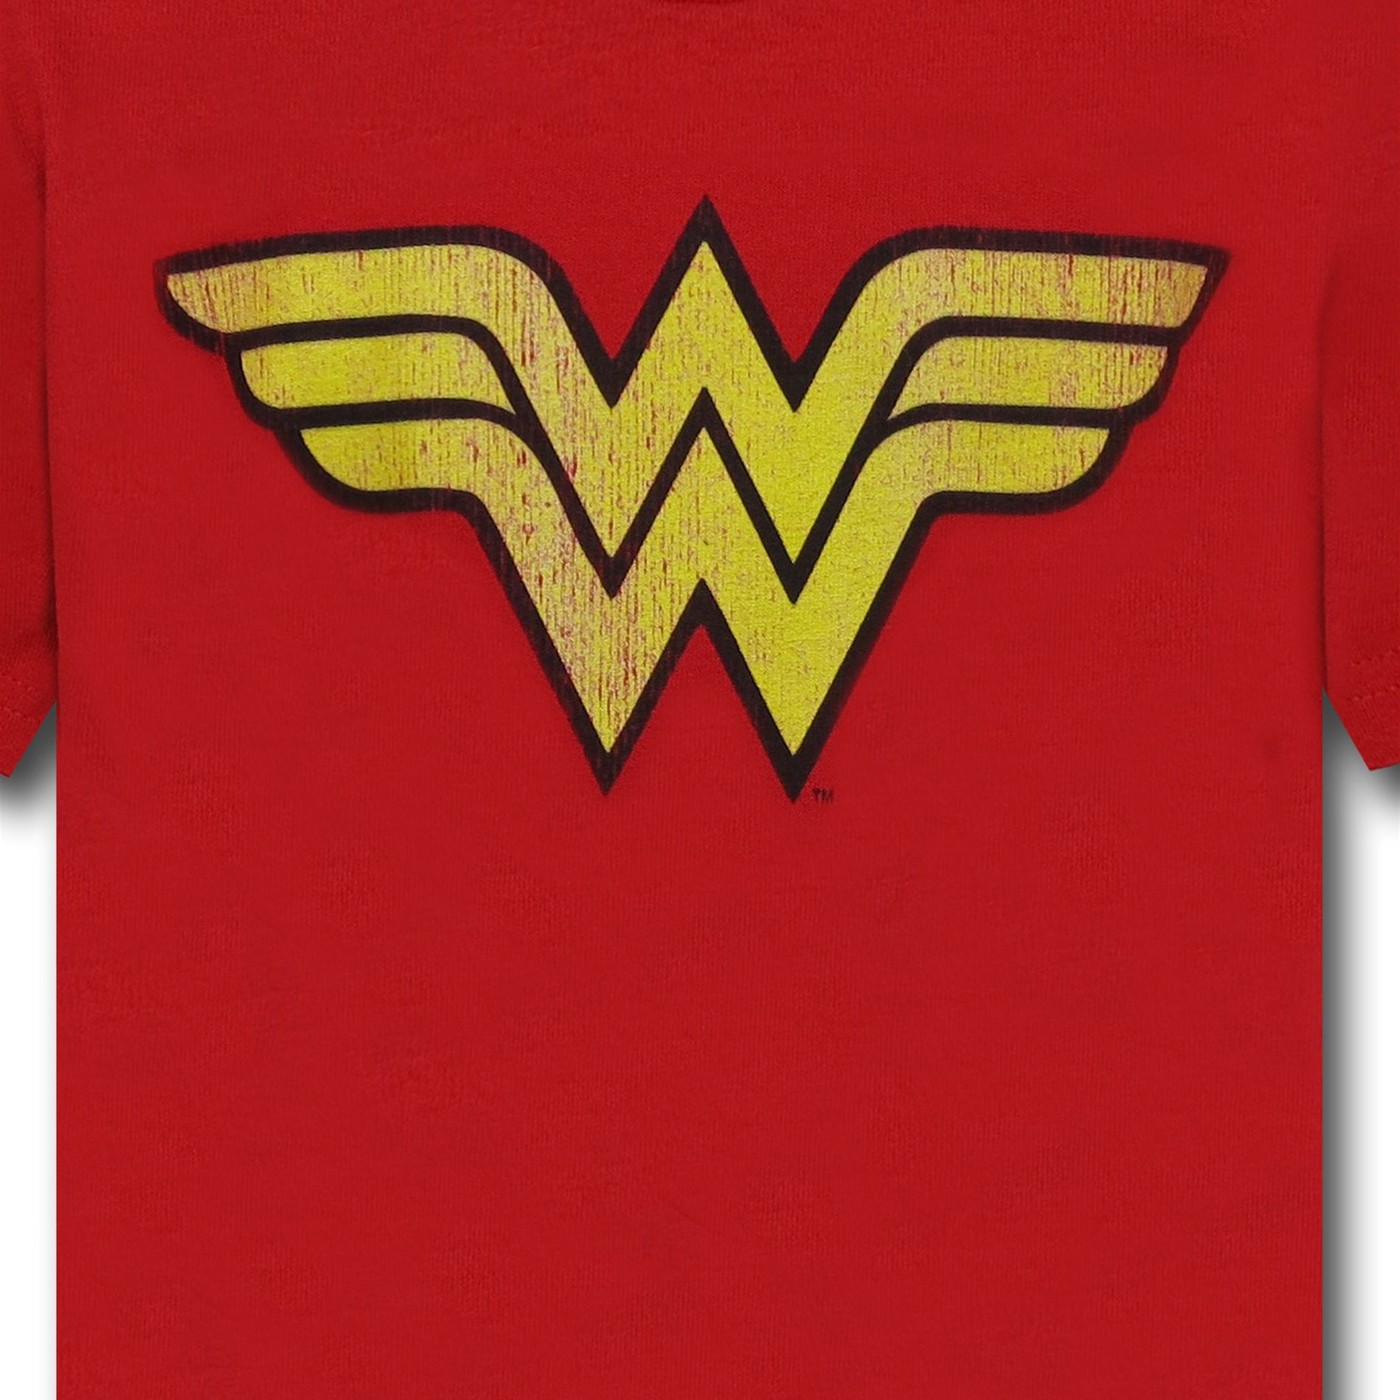 Wonder Woman Worn Symbol Kids T-Shirt